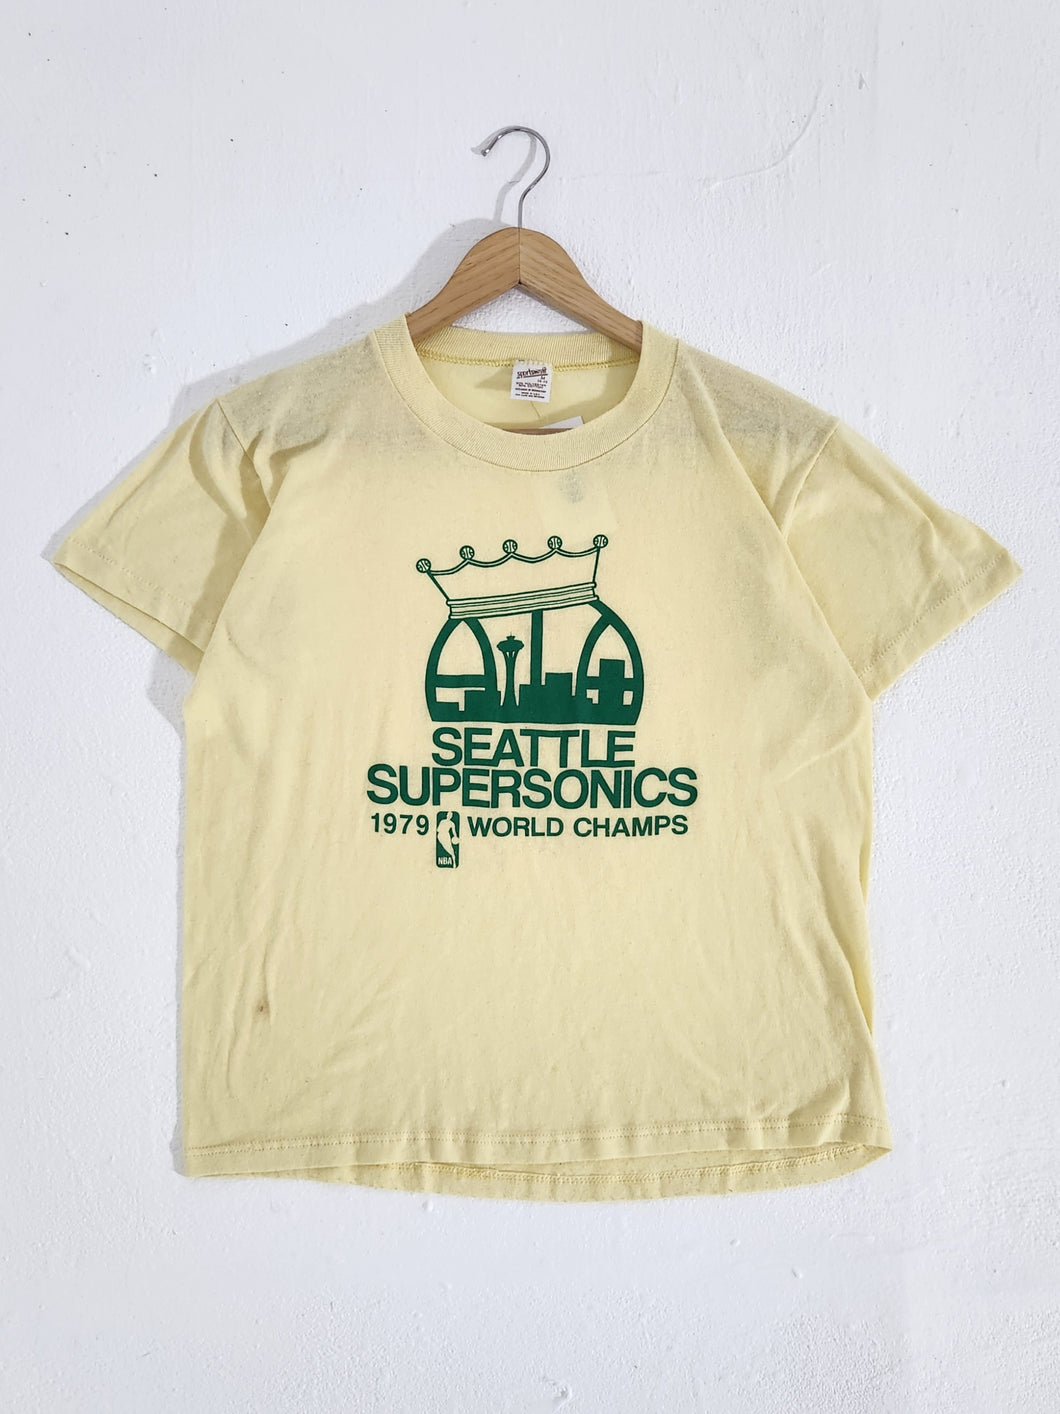 Vintage 1970s Seattle Supersonics 1979 NBA Champions T-Shirt Sz. M